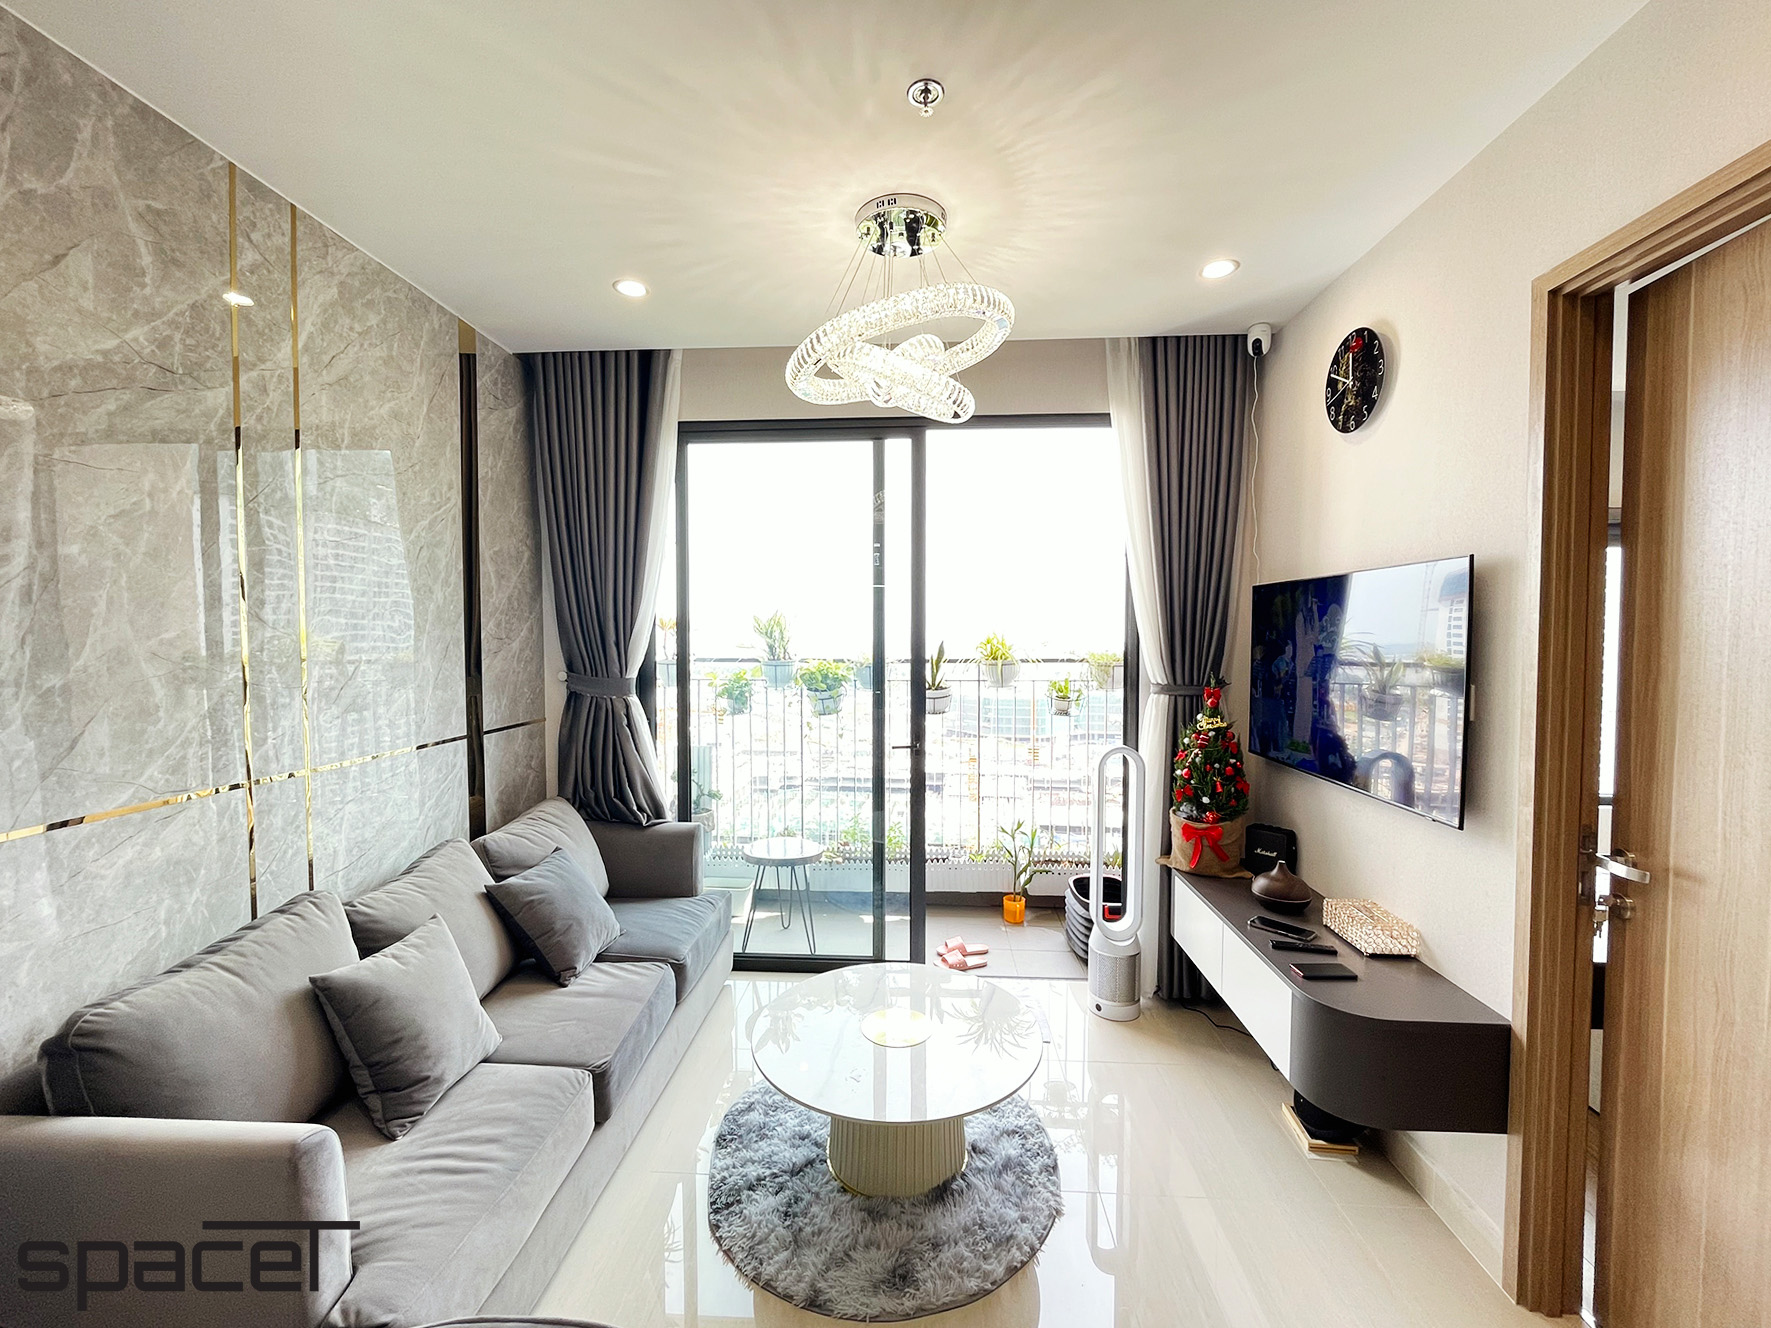 Phòng khách, phong cách Hiện đại Modern, hoàn thiện nội thất, căn hộ The Origami Vinhomes Quận 9